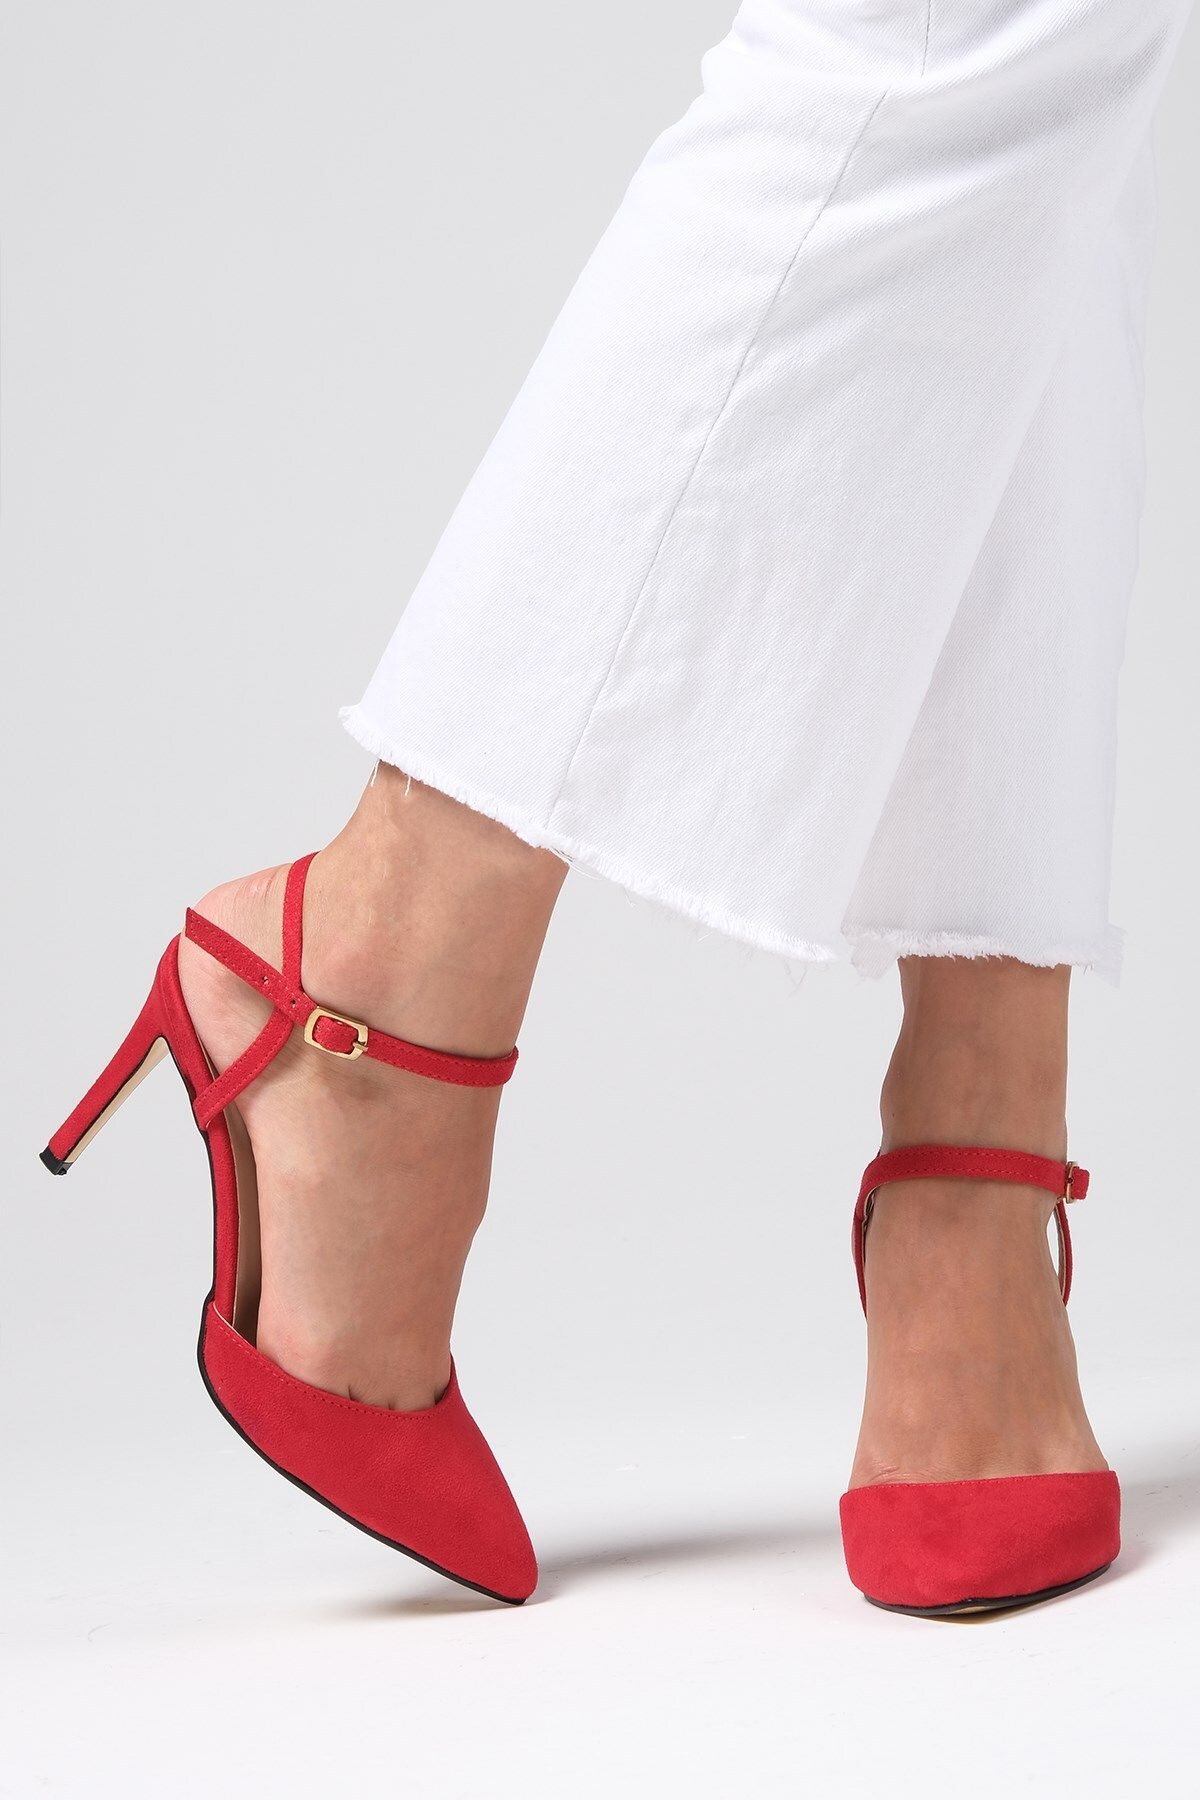 Mio Gusto Lucia Kırmızı Renk Süet Bilek Bantlı Yandan Tokalı Kadın Topuklu Ayakkabı